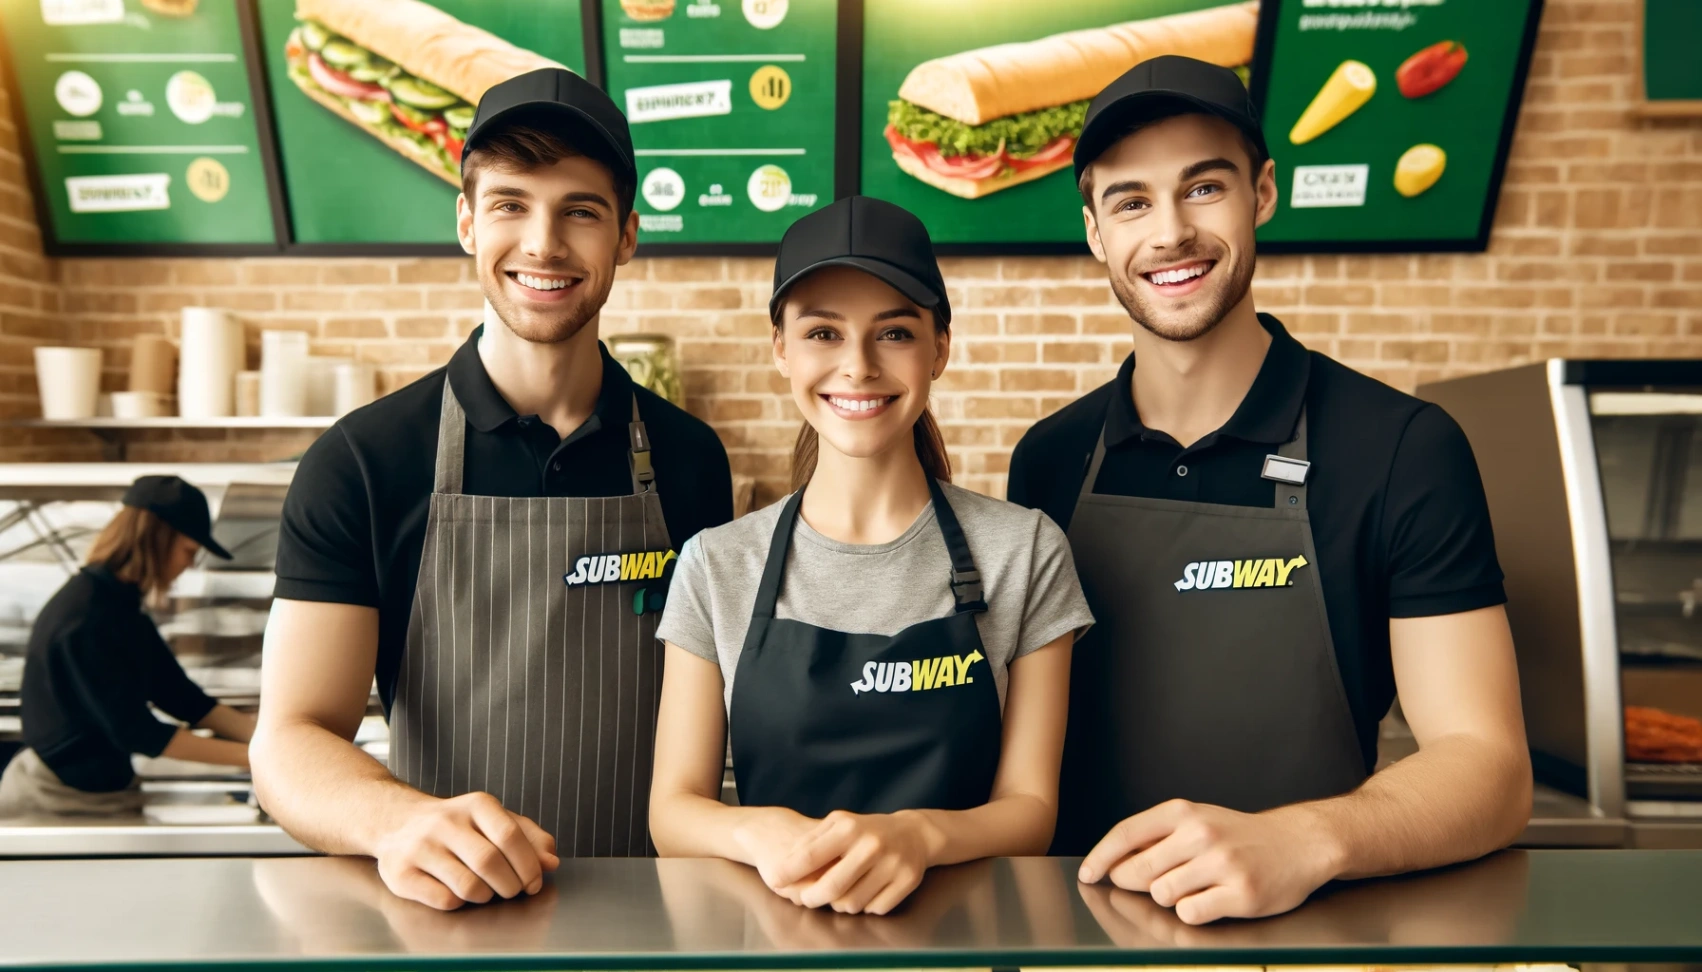 Subway'l tööpakkumised: Õpi, kuidas kandideerida online